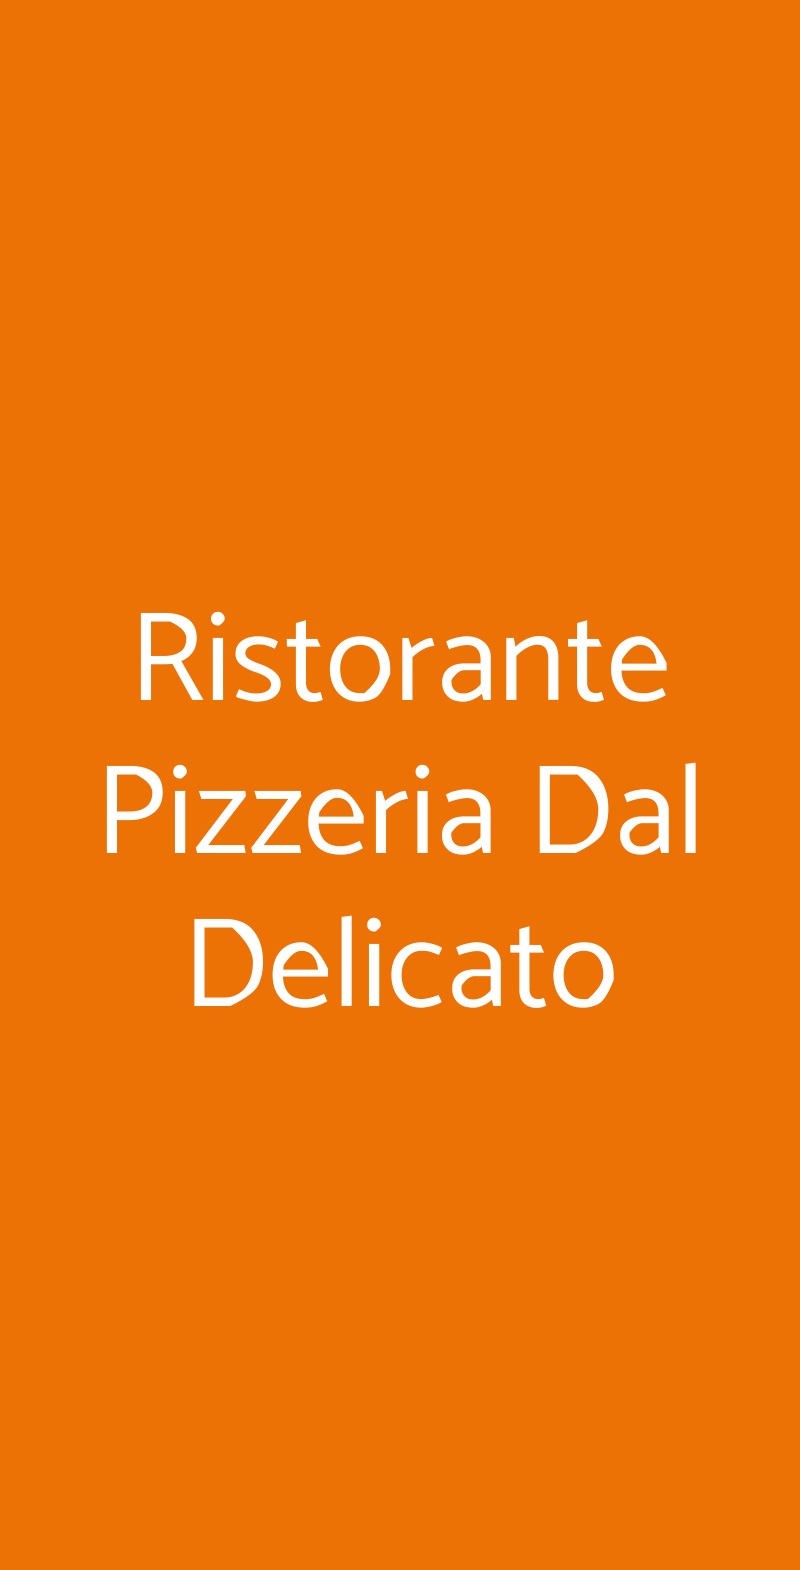 Ristorante Pizzeria Dal Delicato San Giorgio a Cremano menù 1 pagina